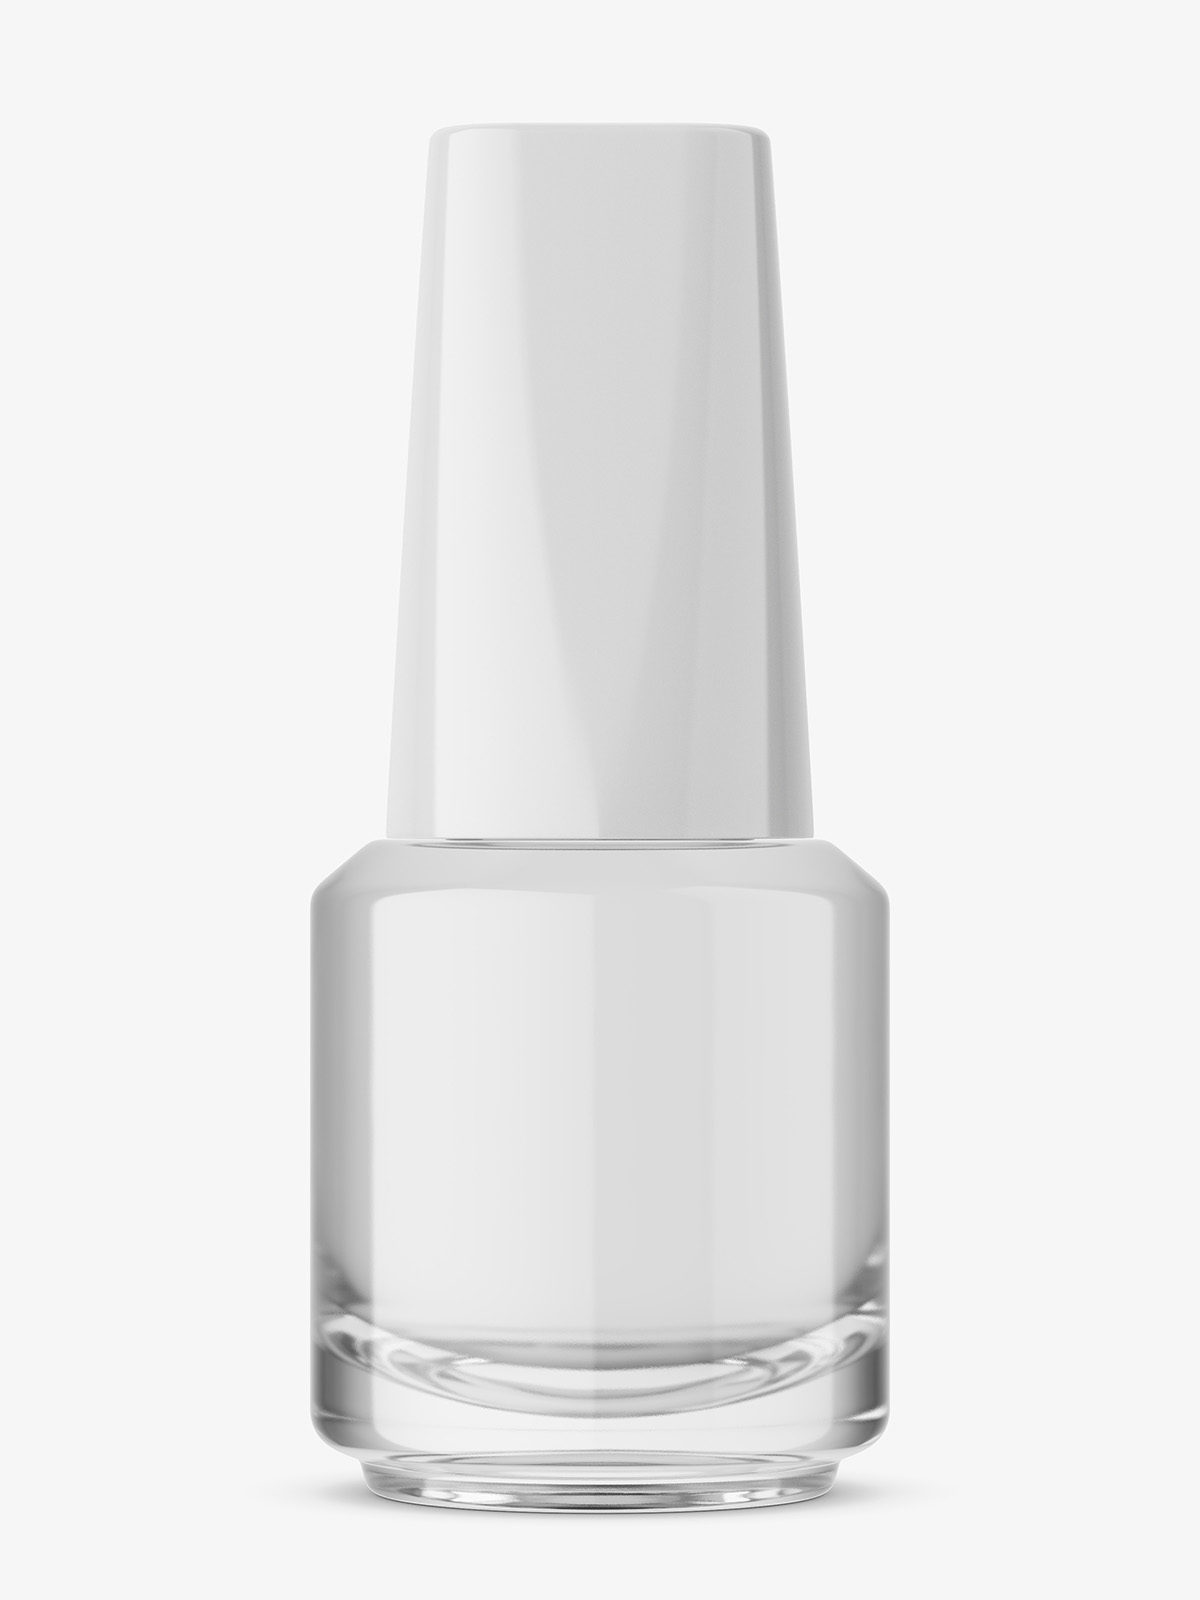 Download Transparent nail polish bottle mockup - Smarty Mockups